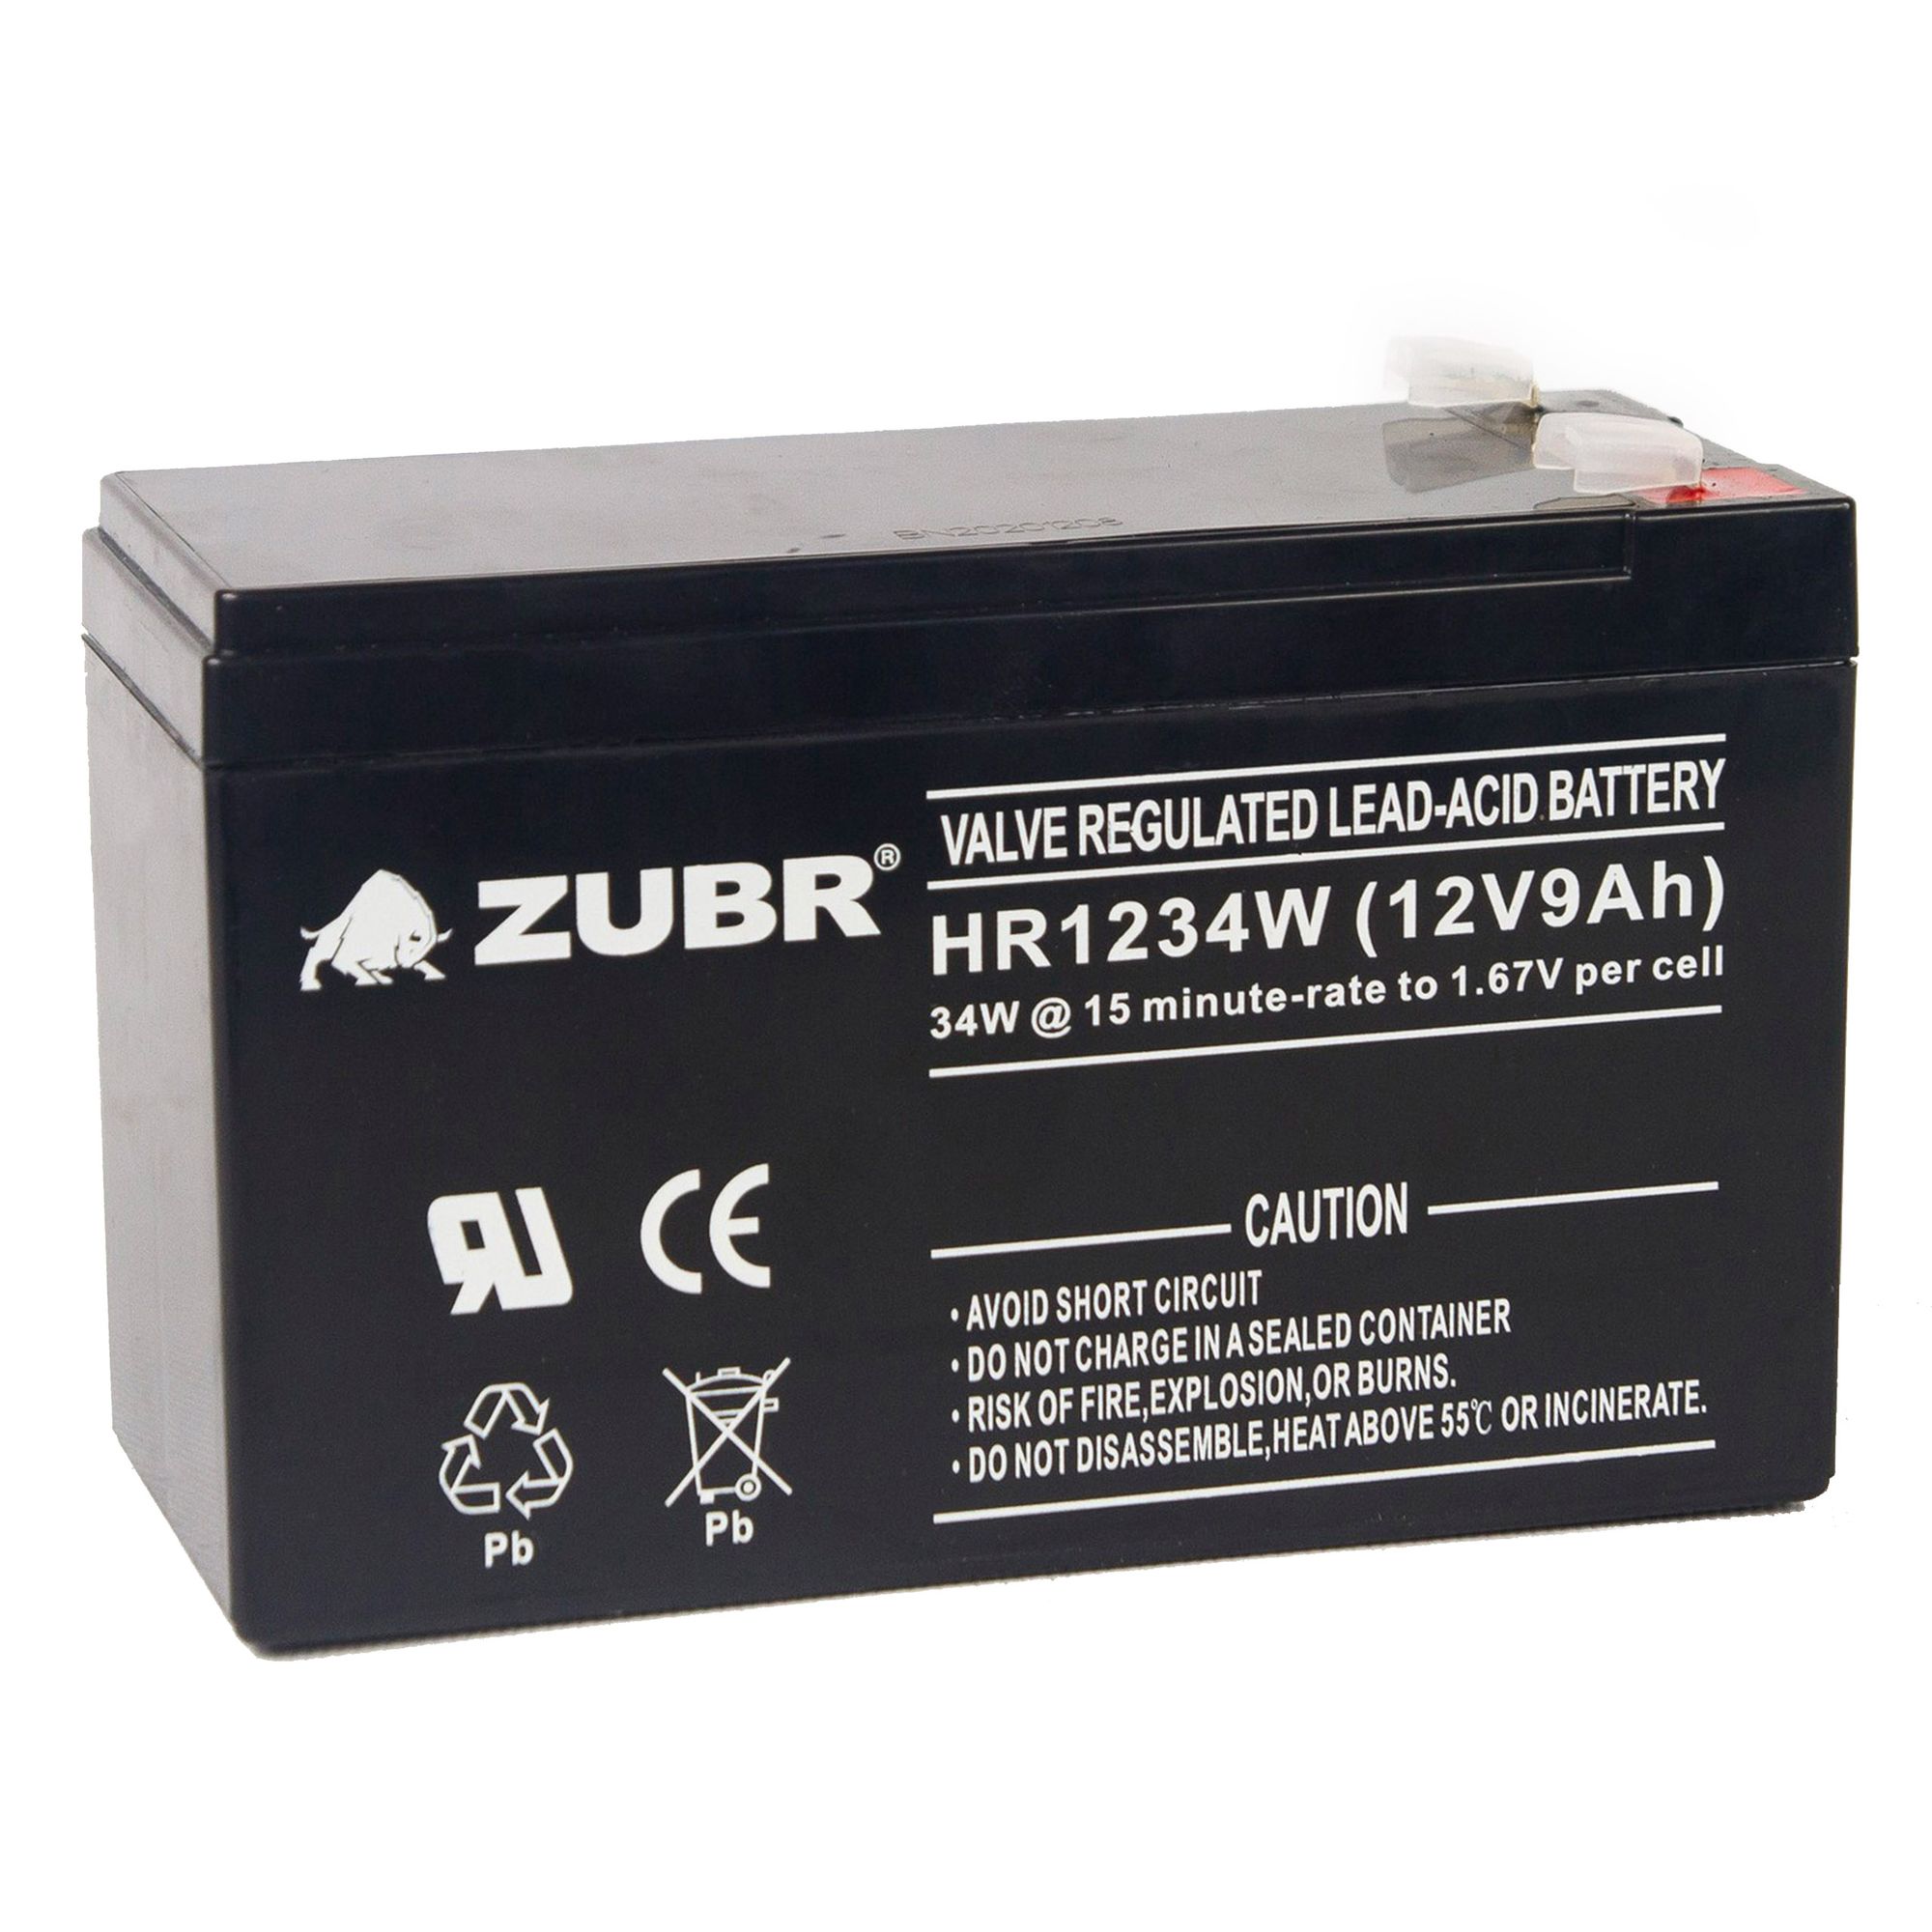 Батарея для ИБП ZUBR HR 1234 W (12V, 9Ah) (HR1234W) аккумулятор для ибп wbr hr1234w 12v 9ah